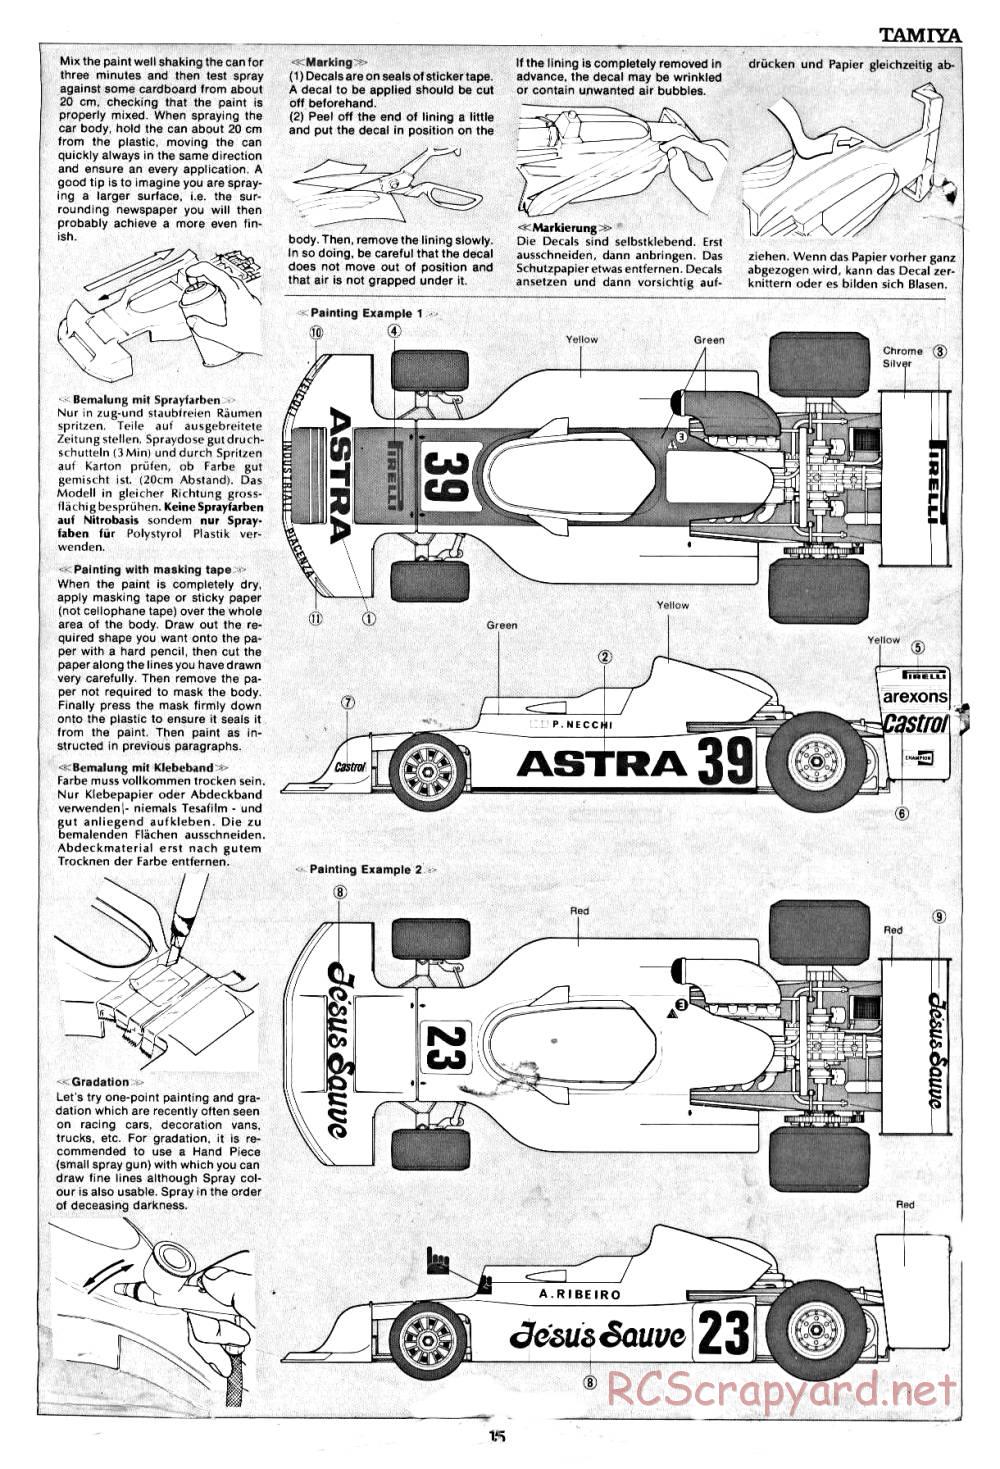 Tamiya - March 782 BMW (F2) - 58013 - Manual - Page 15